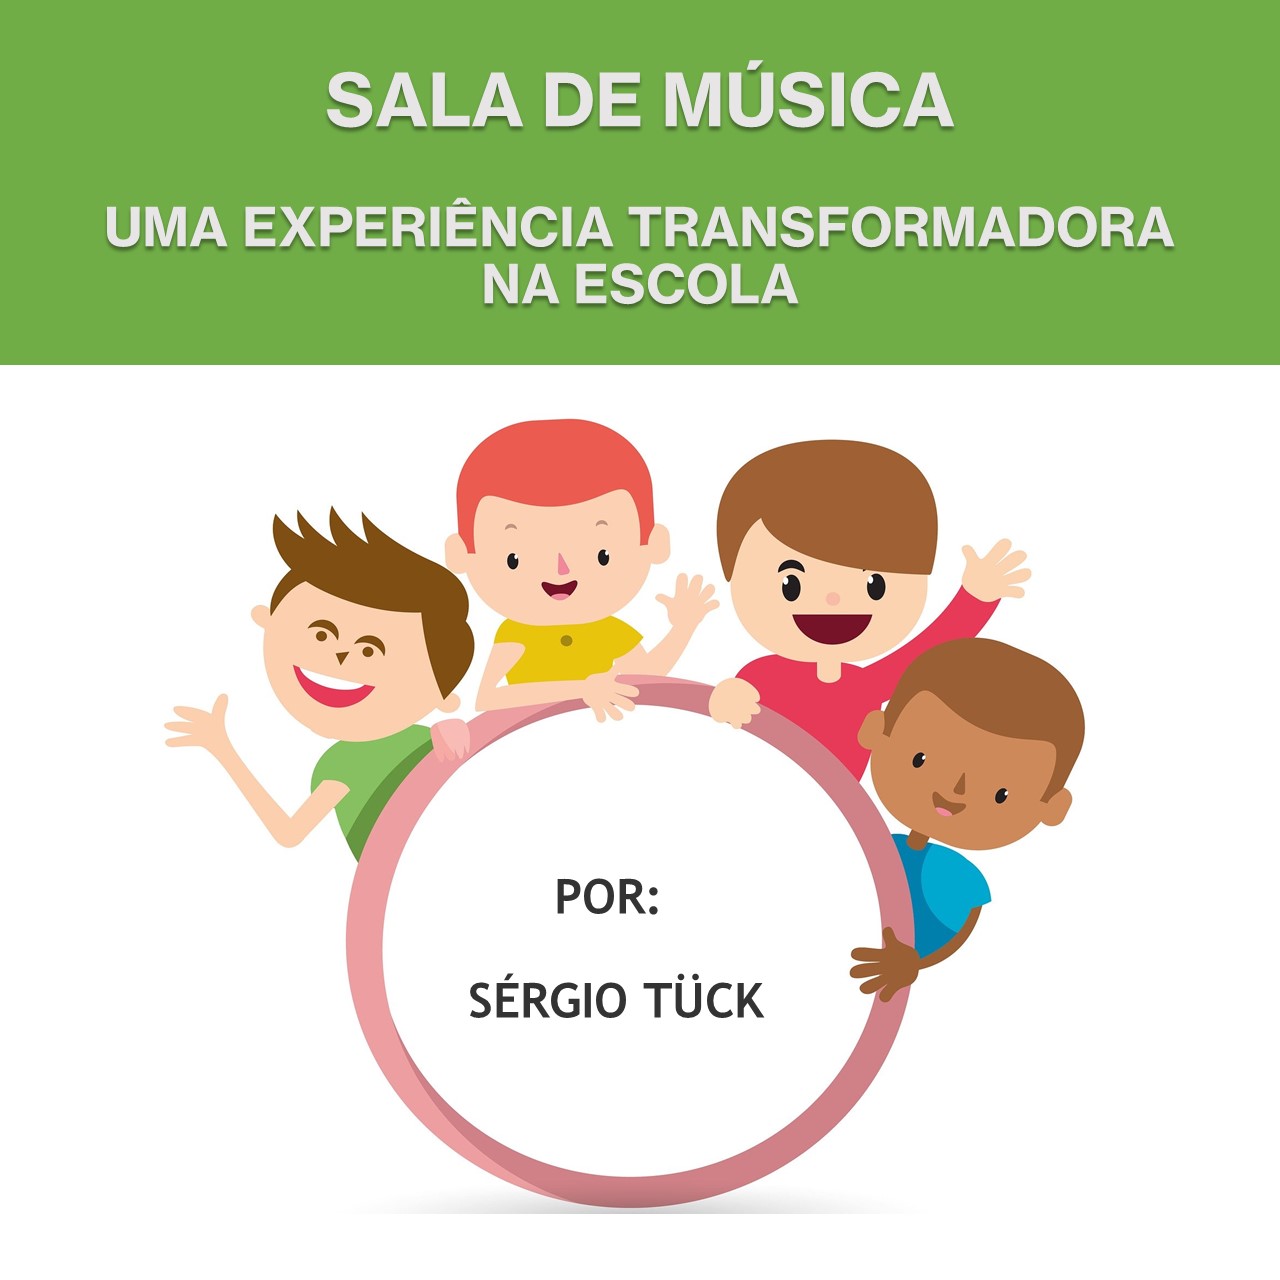 CIRANDA DA CAIXOLA - Caixola Musical